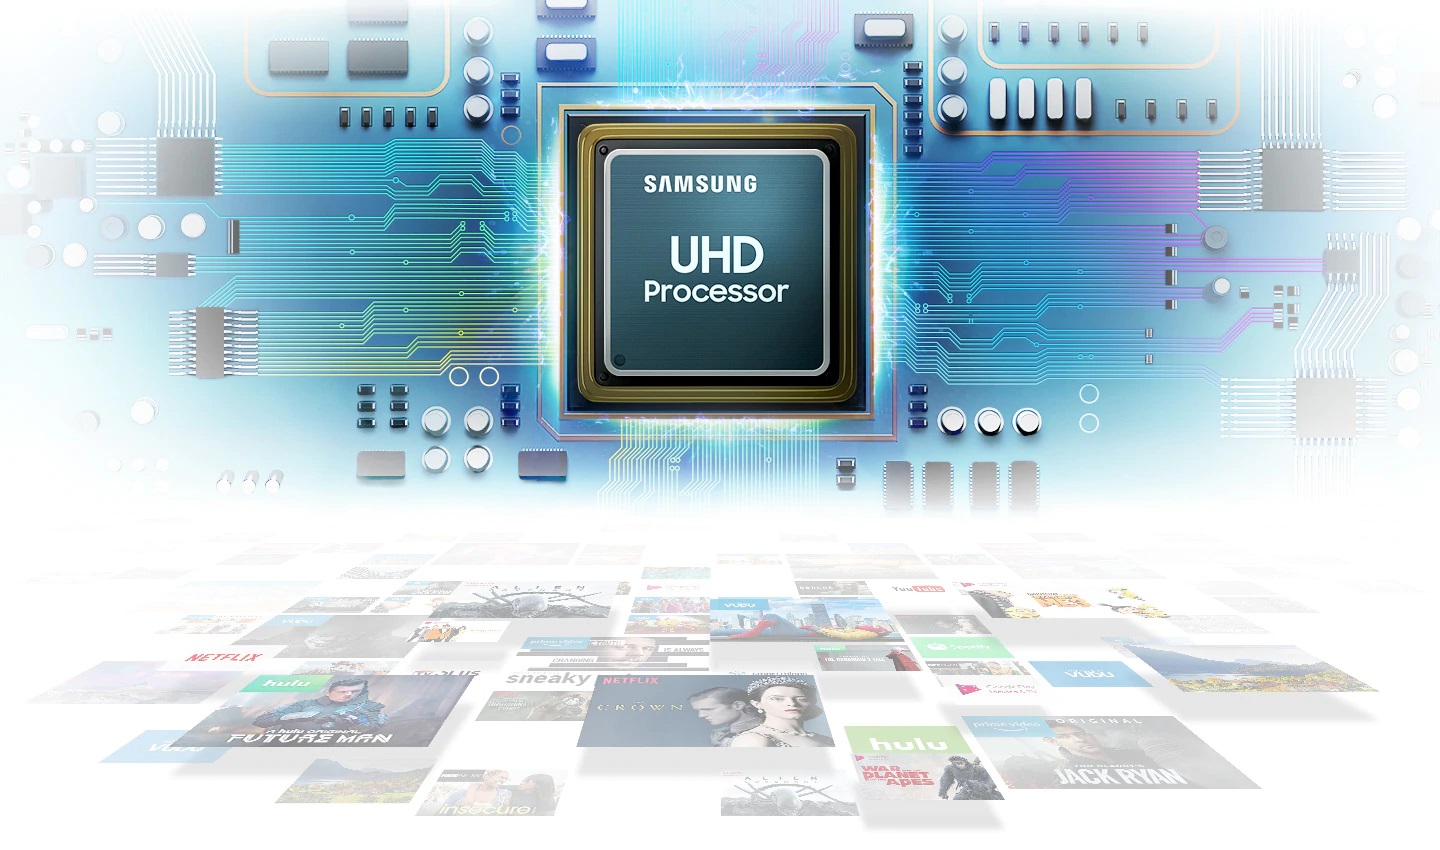 Smart Tivi Samsung 4K 43 inch UA43RU7100KXXV sử dụng bộ xử lý UHD quyền lực